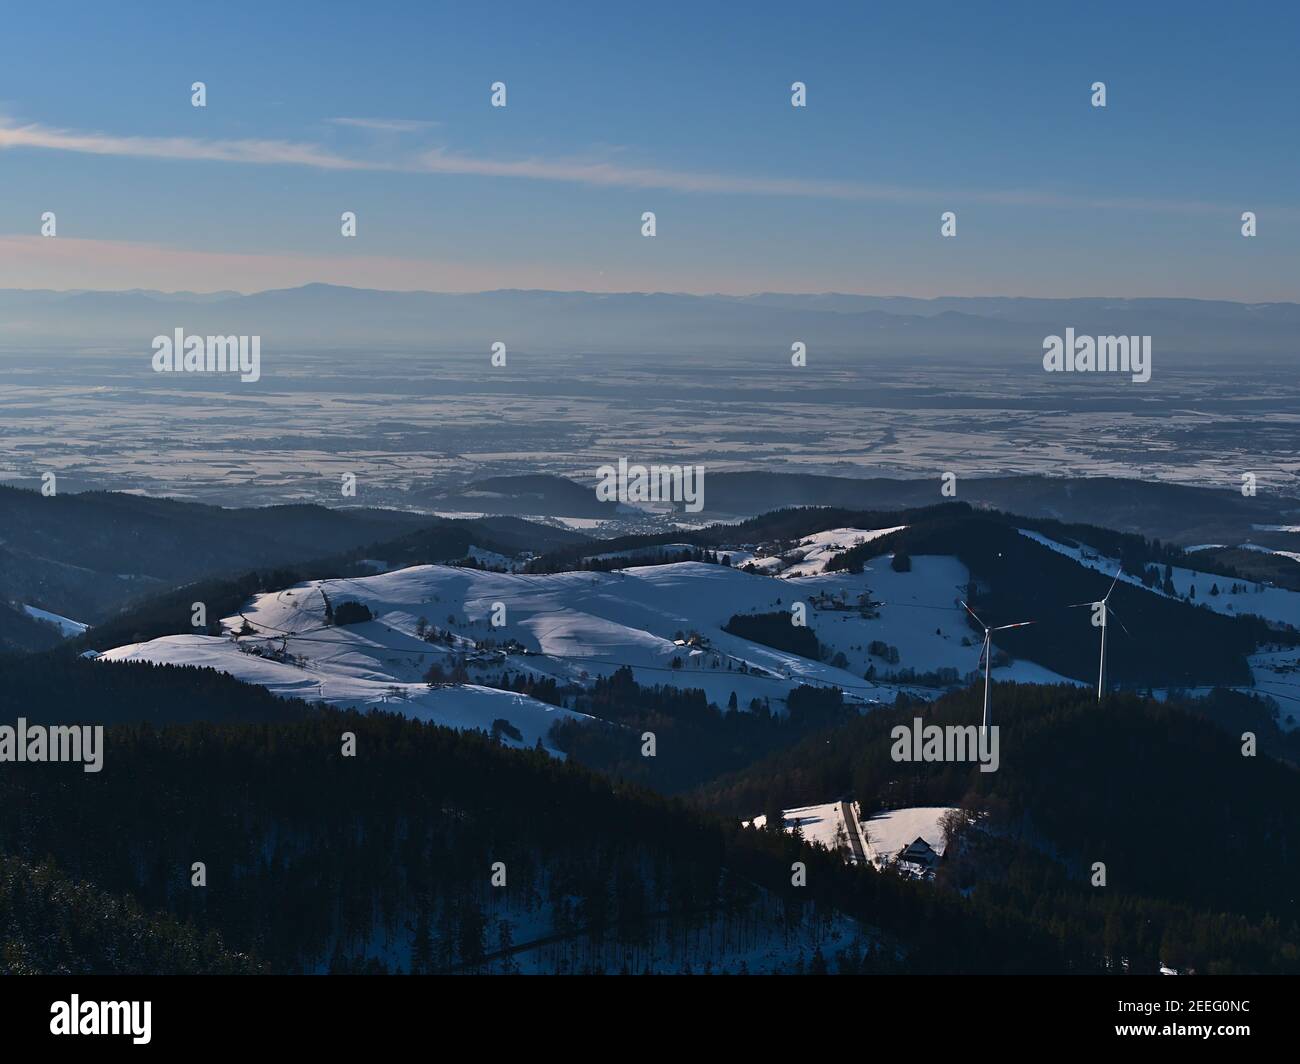 Belle vue aérienne des contreforts des collines de la Forêt Noire, de la vallée du Rhin et des montagnes des Vosges à l'horizon avec paysage enneigé en hiver. Banque D'Images